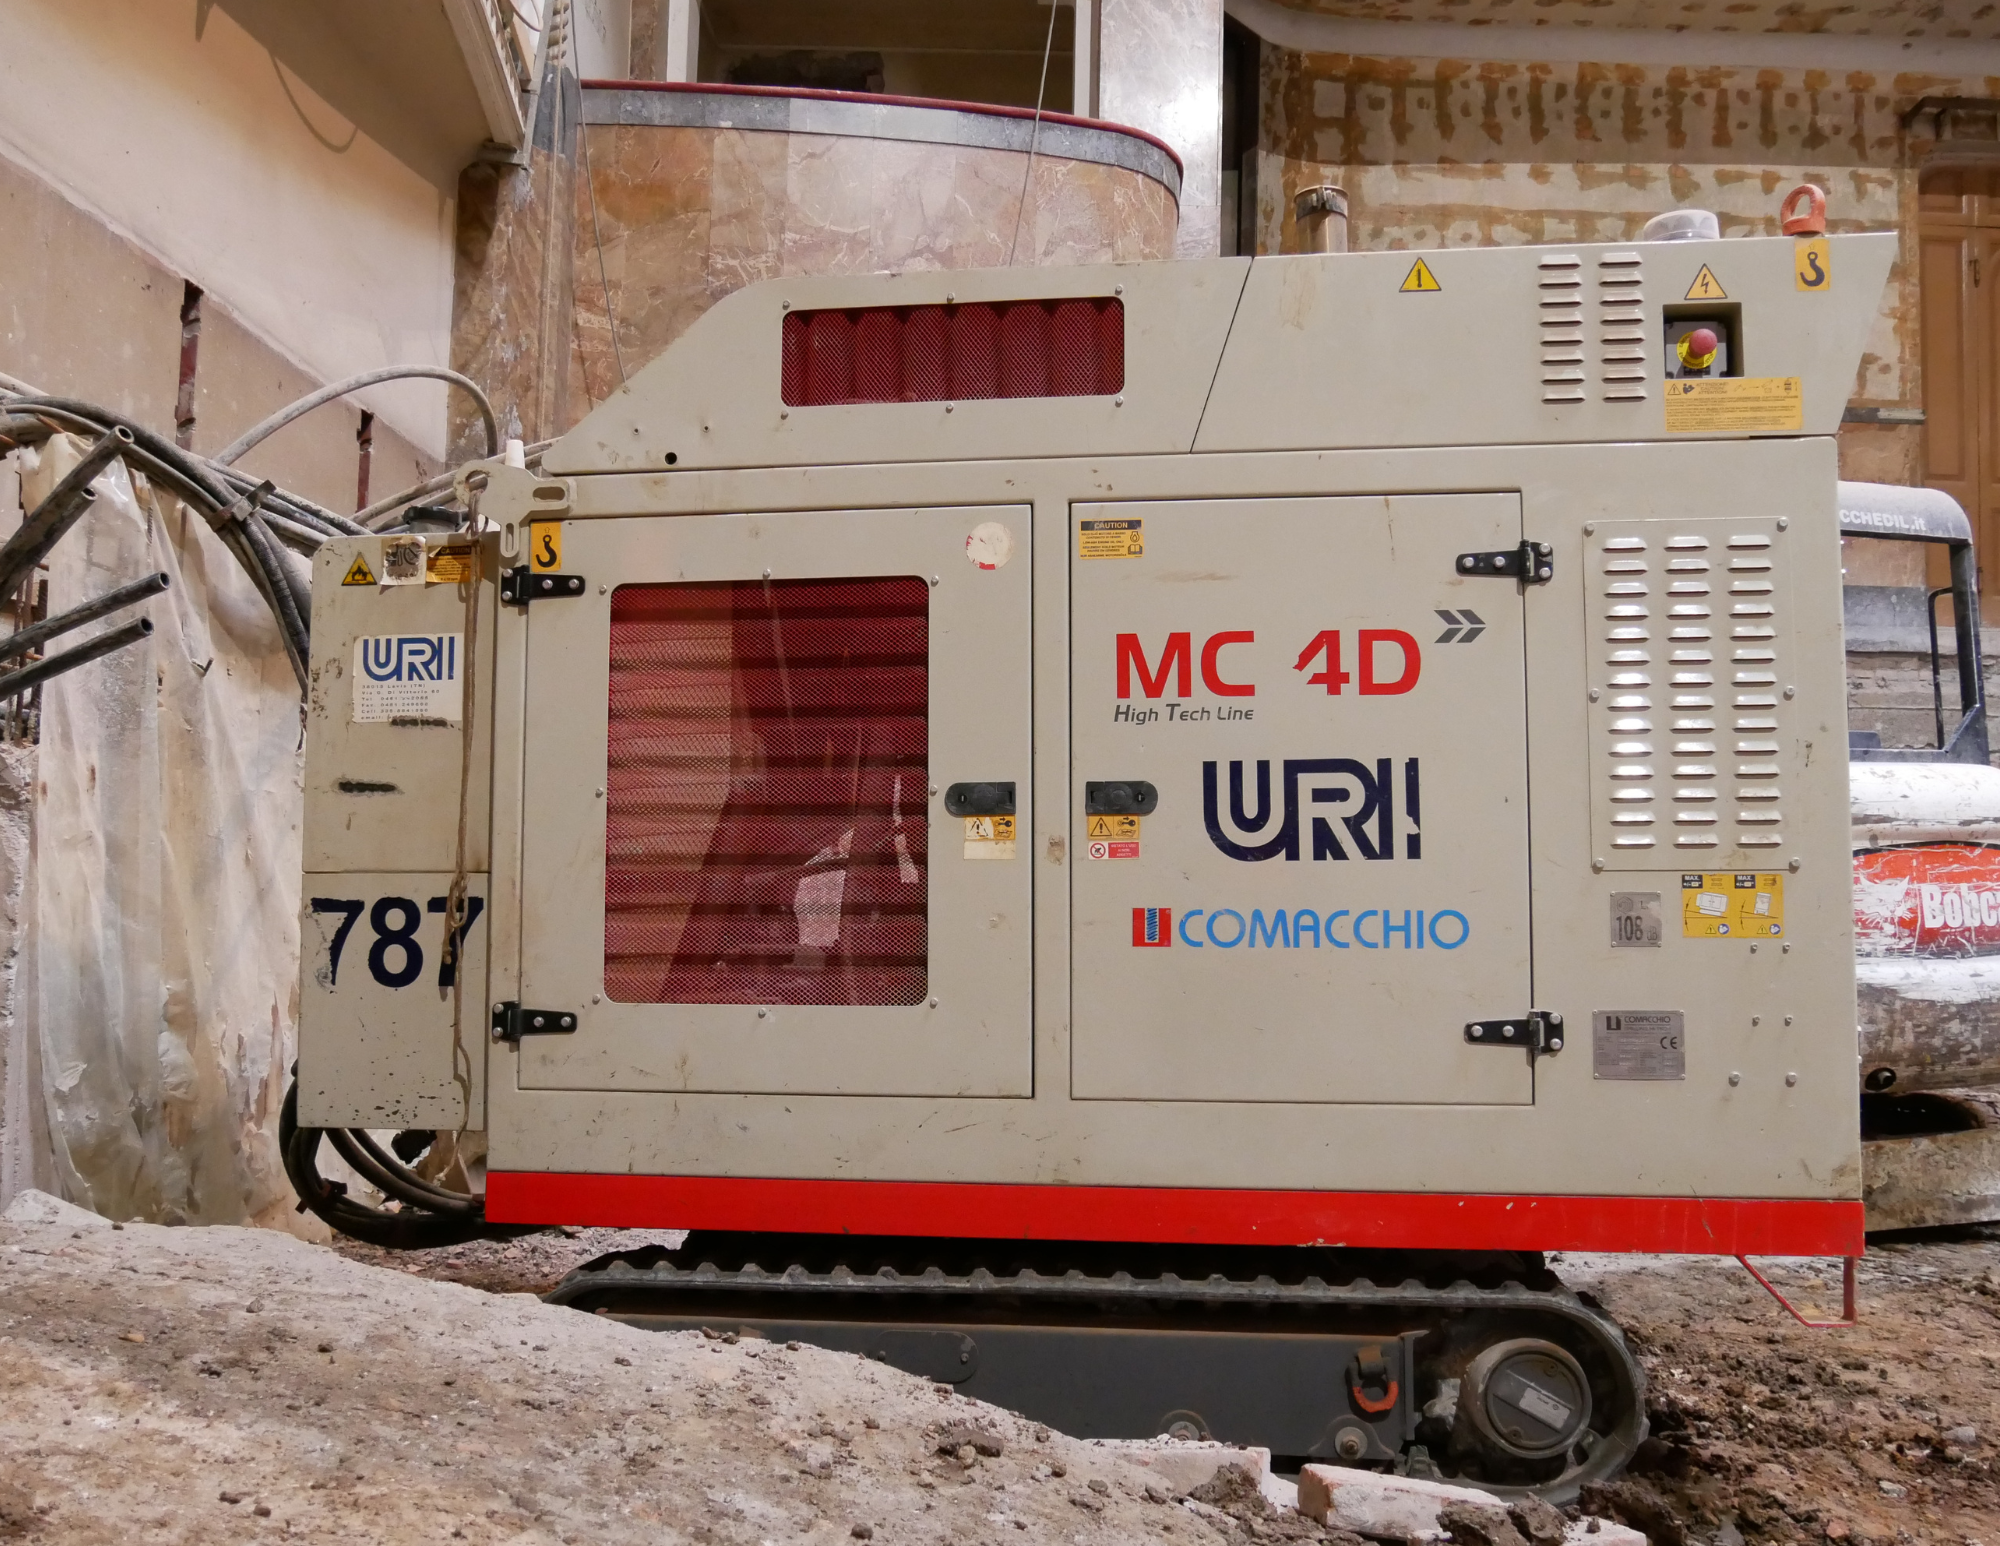 CMC 4D Teatro carani lavori di geotermia sonda per perforazione URI Comacchio